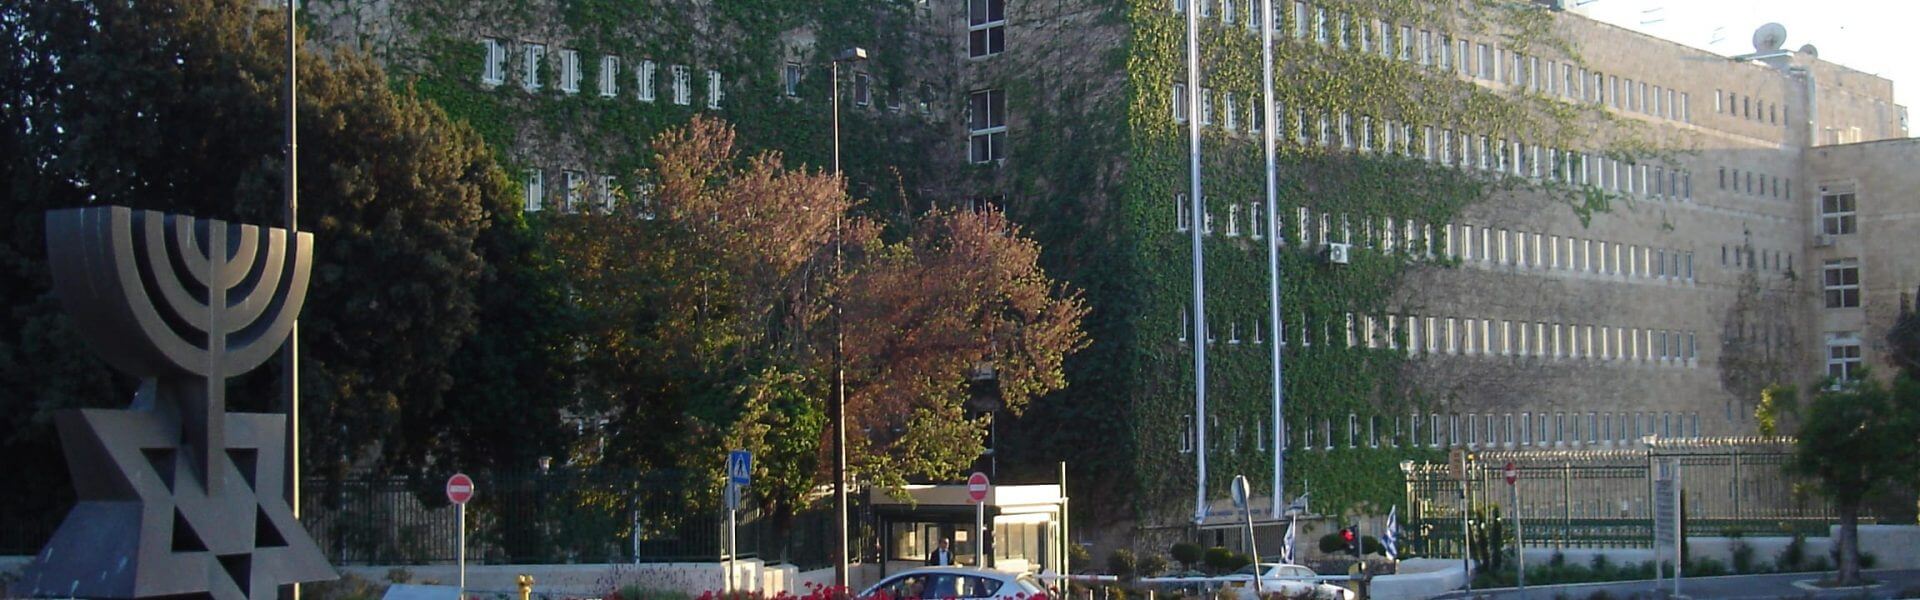 בניין משרד האוצר בירושלים